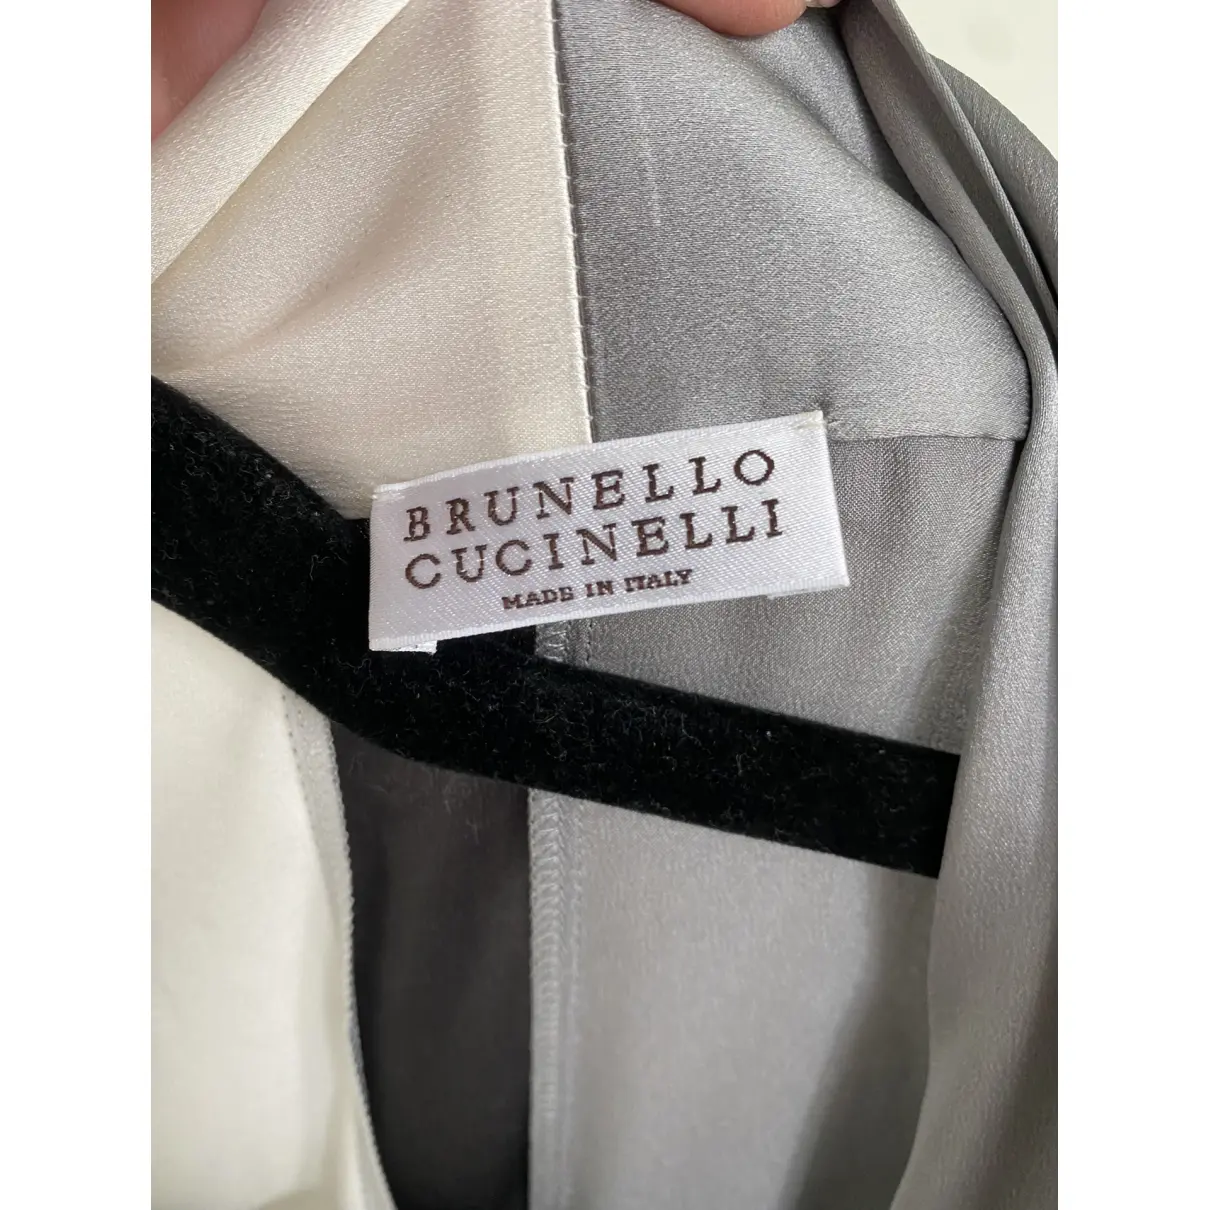 Buy Brunello Cucinelli Silk knitwear online